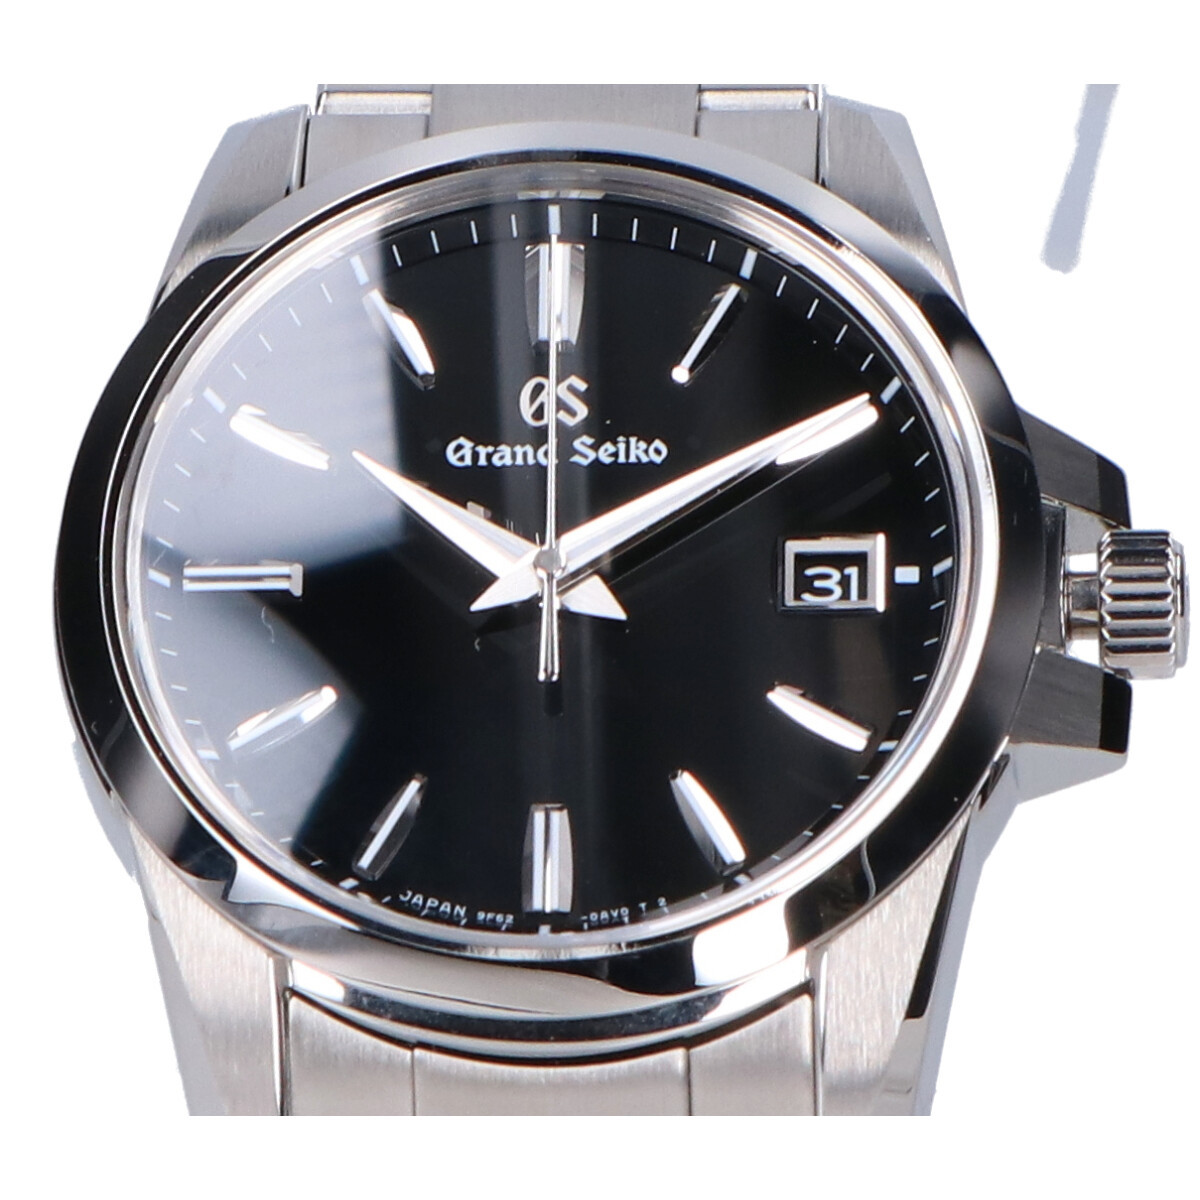 新品同様/ Grand Seiko グランドセイコー SBGX255 9F 黒文字盤 クオーツ ウォッチ 腕時計 シルバー メンズ 